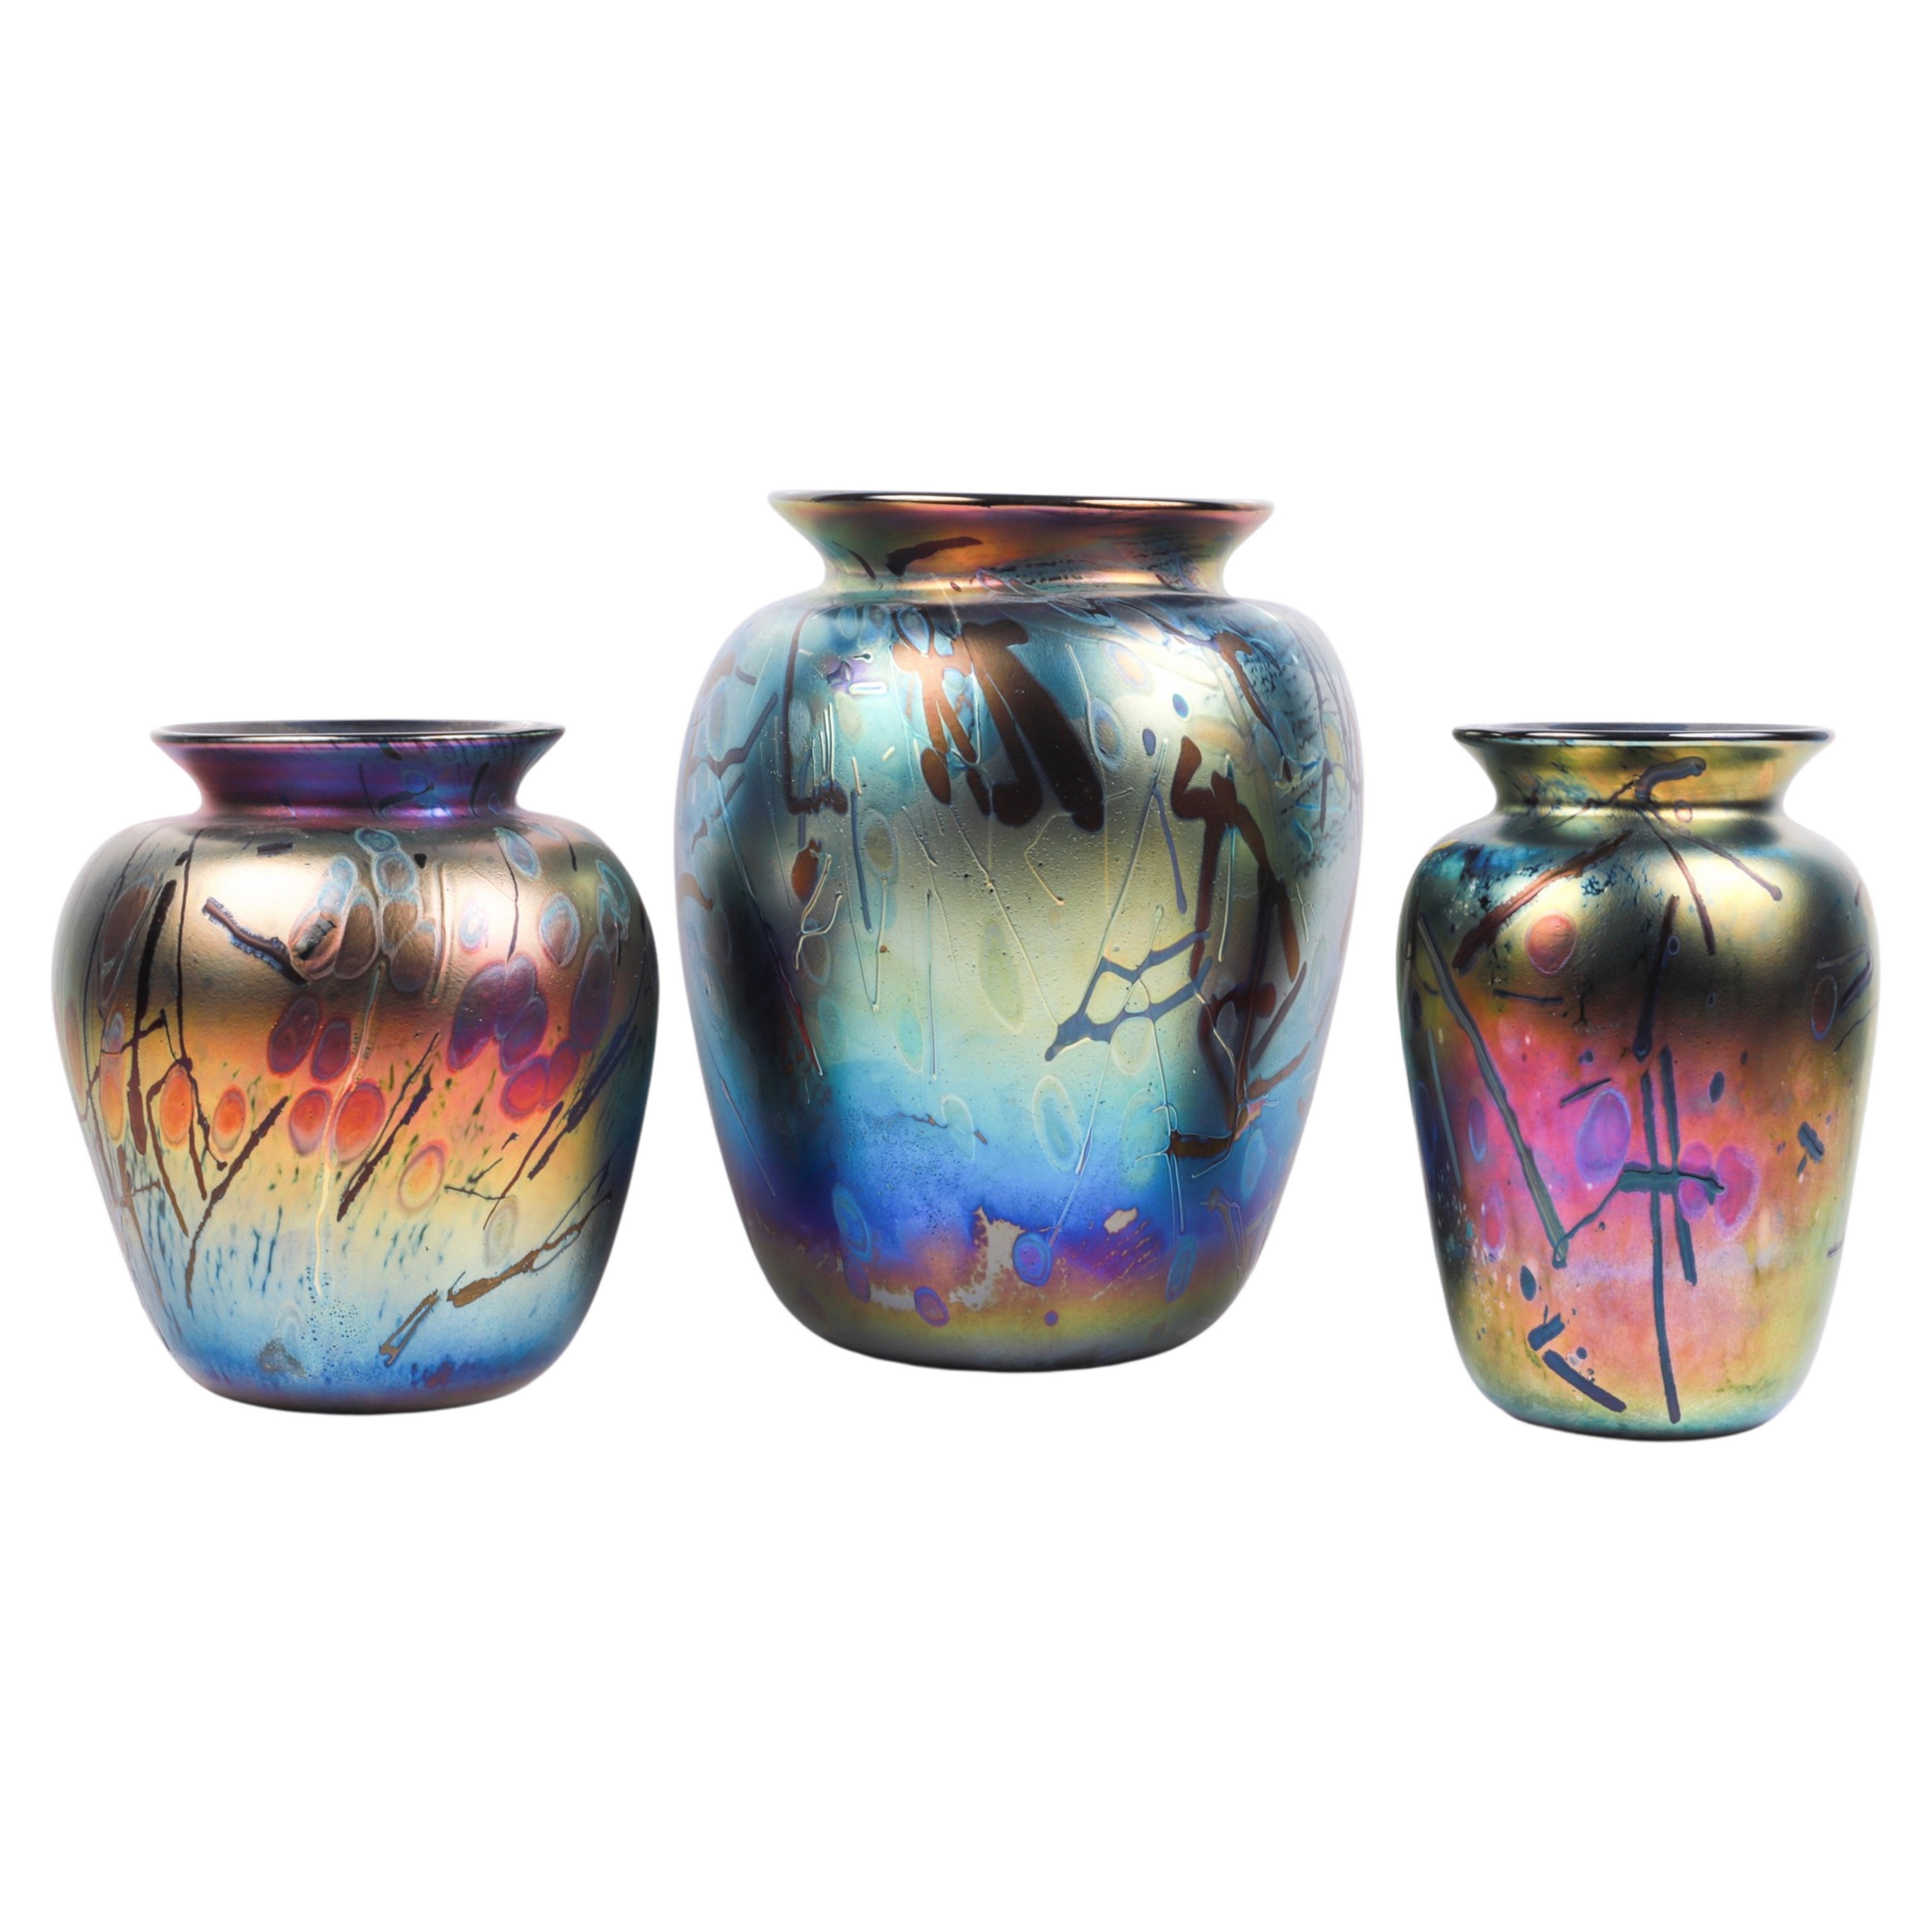  3 Arthur Allison art glass vases  3b45c2